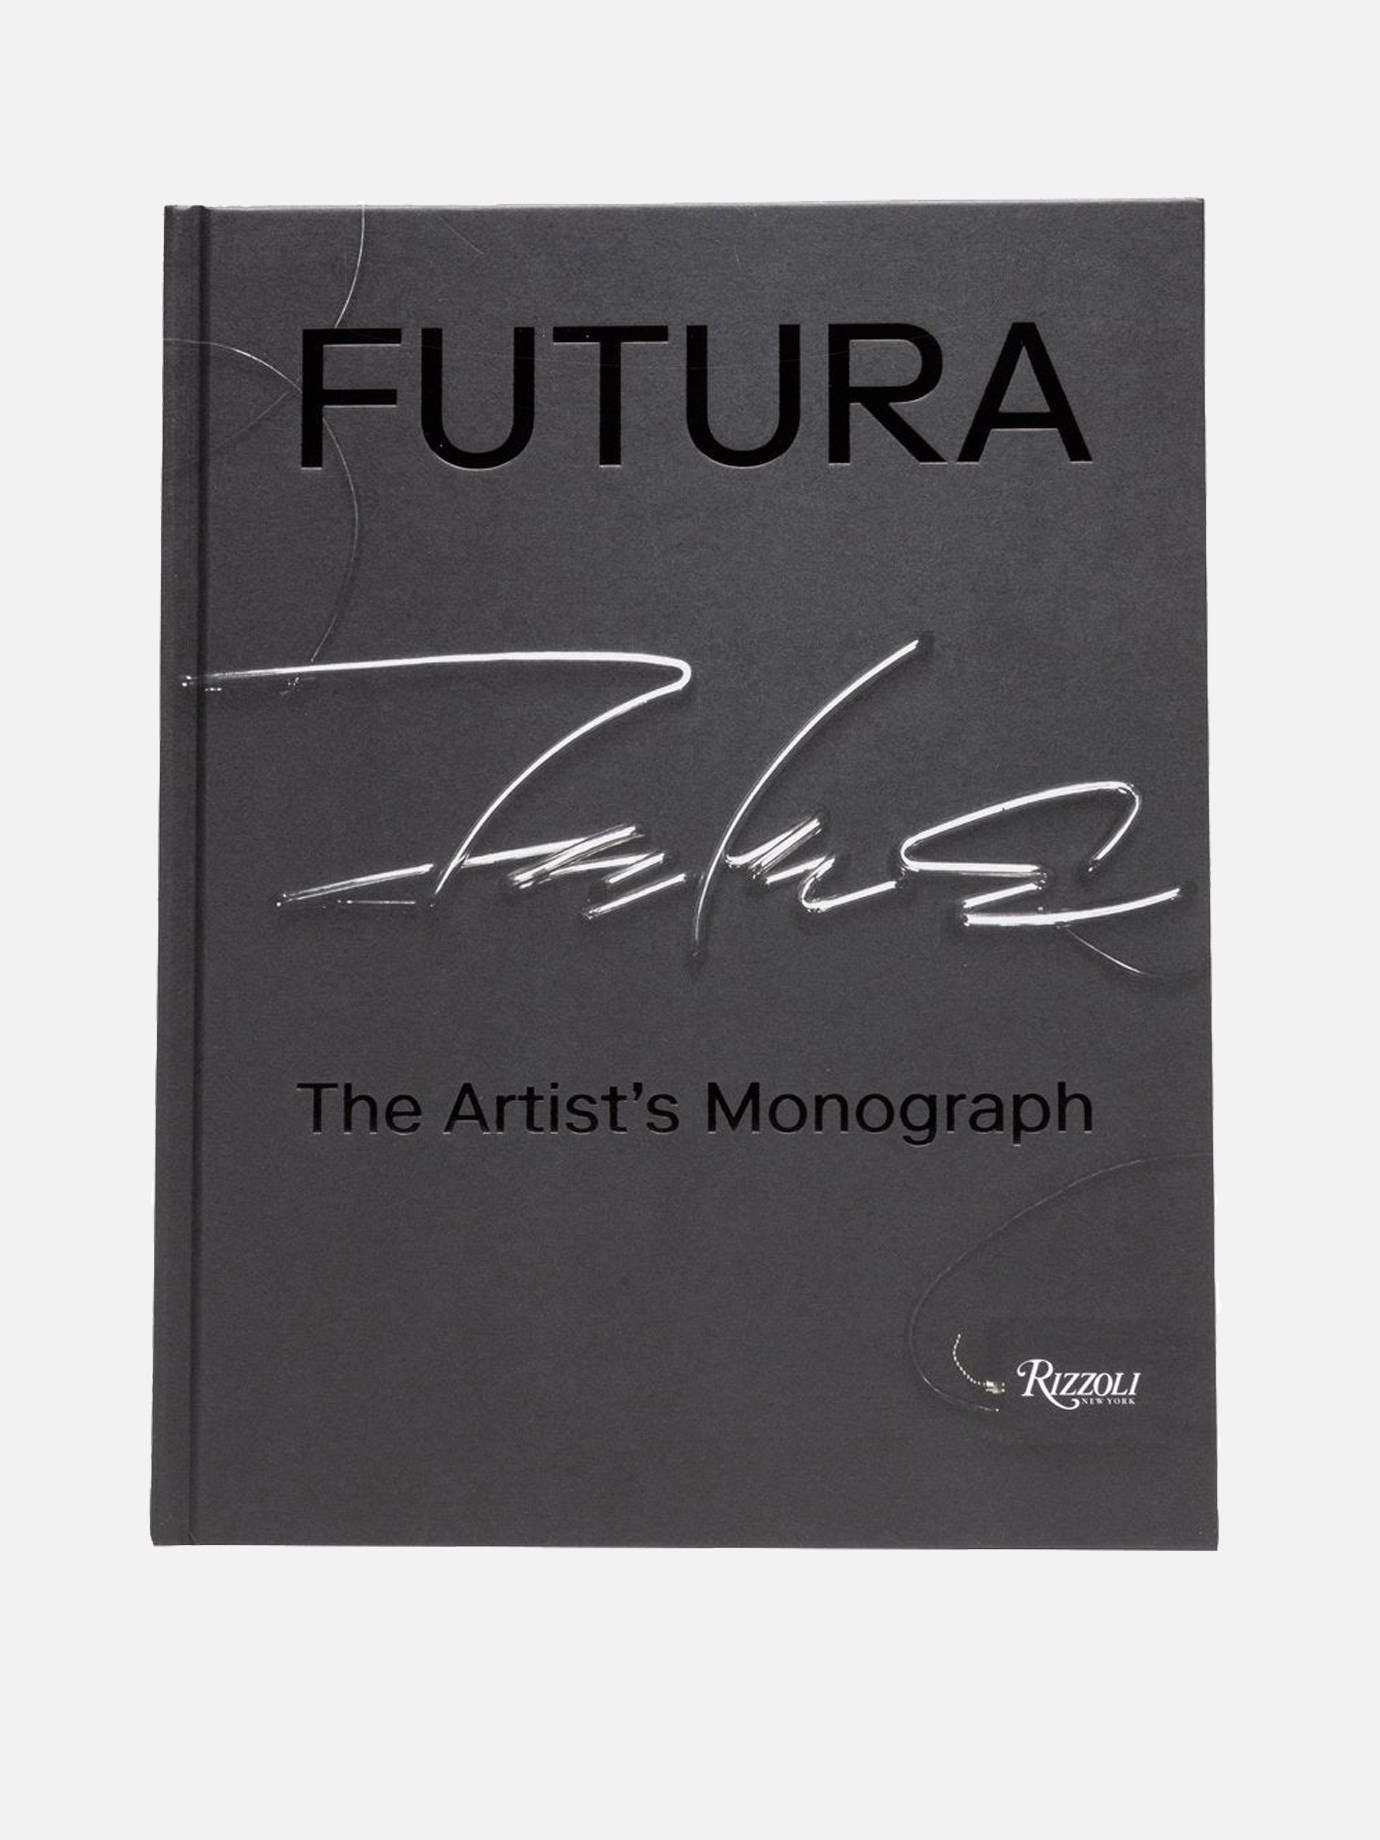  The Artist's Monograph  Rizzoli Futuraby Rizzoli - 0